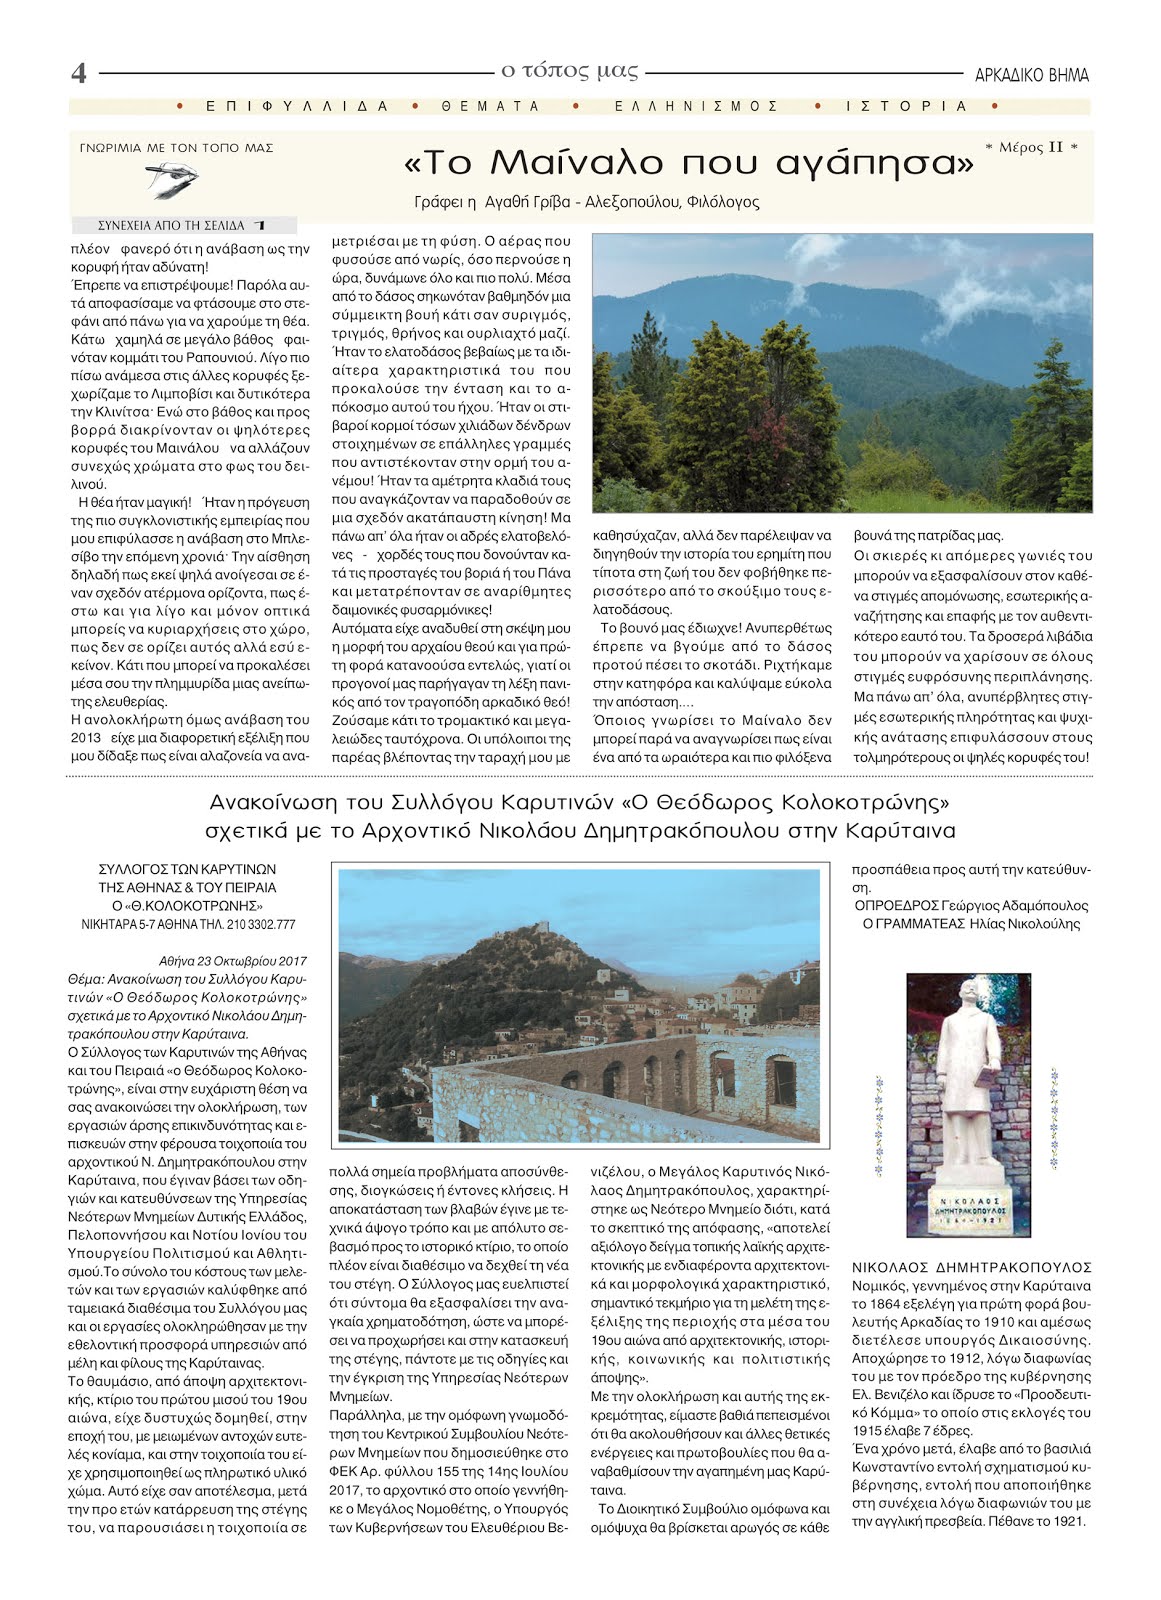 Ανακοίνωση του Συλλόγου Καρυτινών σχετικά με το Αρχοντικό Νικολάου Δημητρακόπουλου στην Καρύταινα